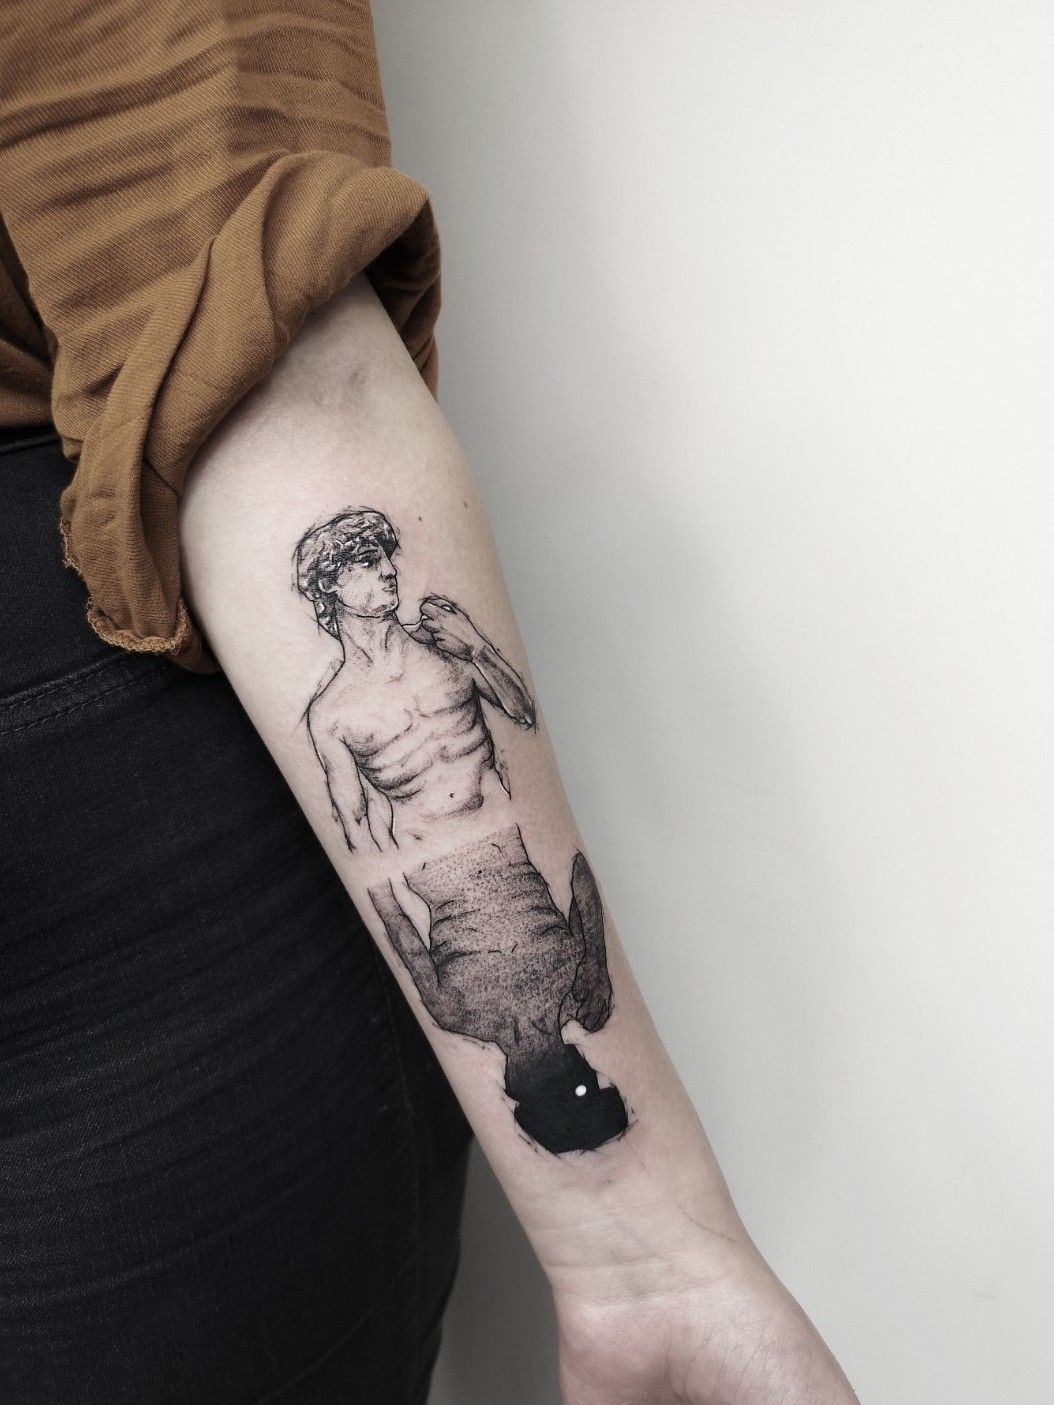 Scultura di David Michelangelo Buonarroti 1501 renaissance art glitch  glitch glitchart renaissance Michelang  Tattoo designs Tattoos Minimal  tattoo